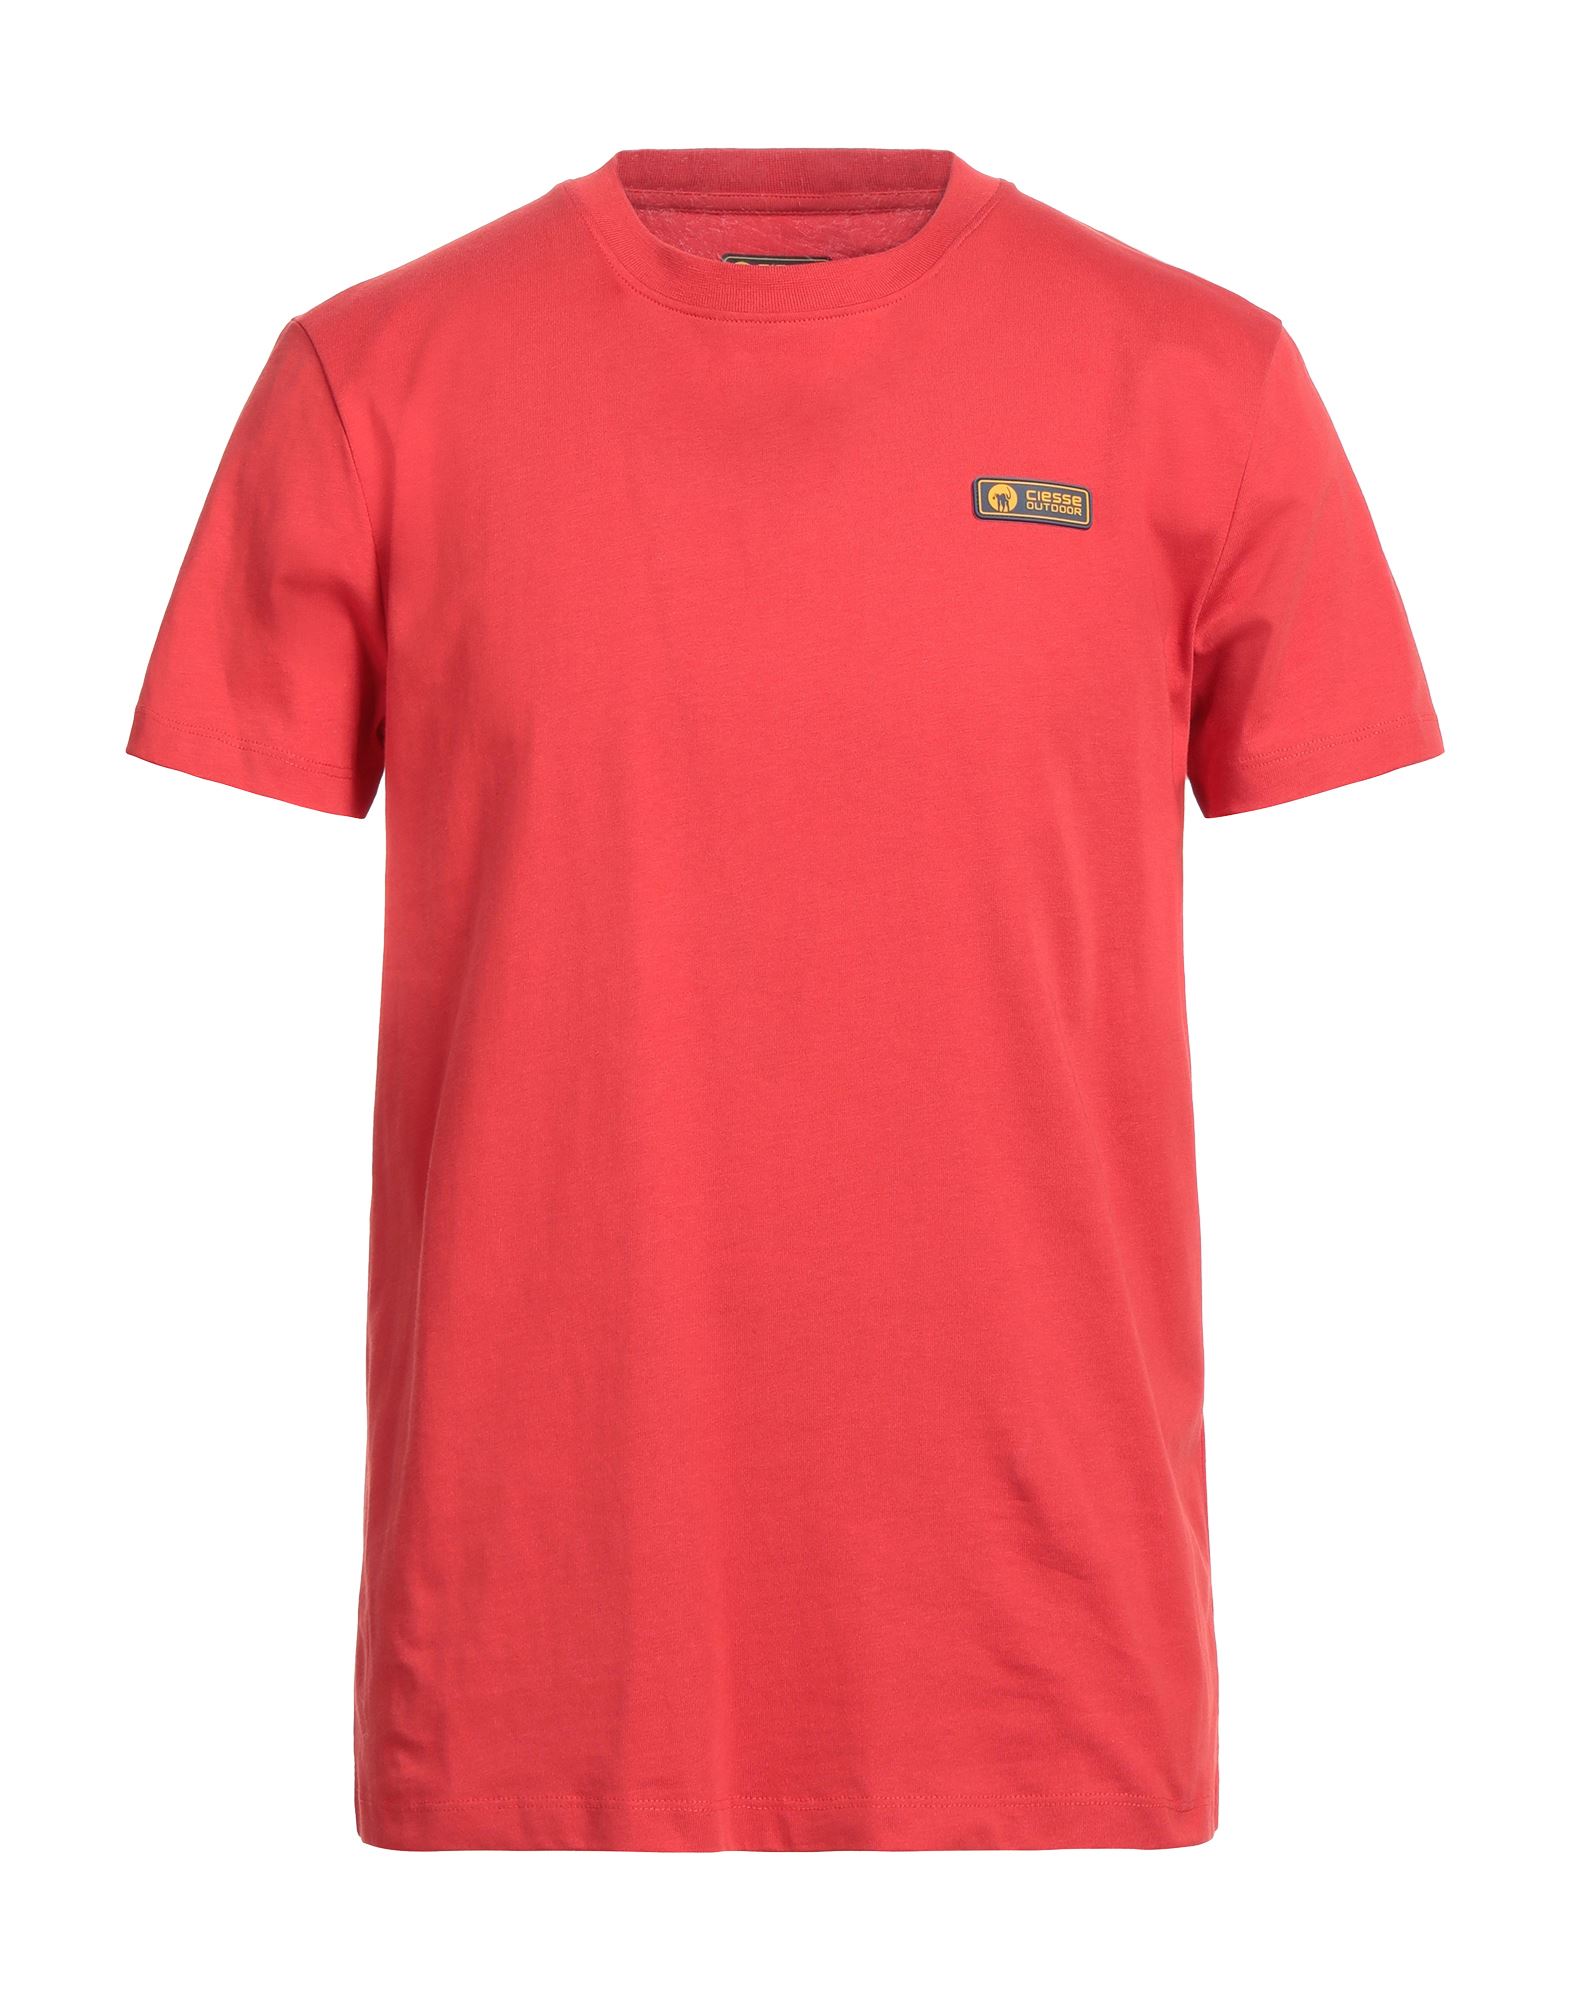 Ciesse Piumini T-shirts In Red